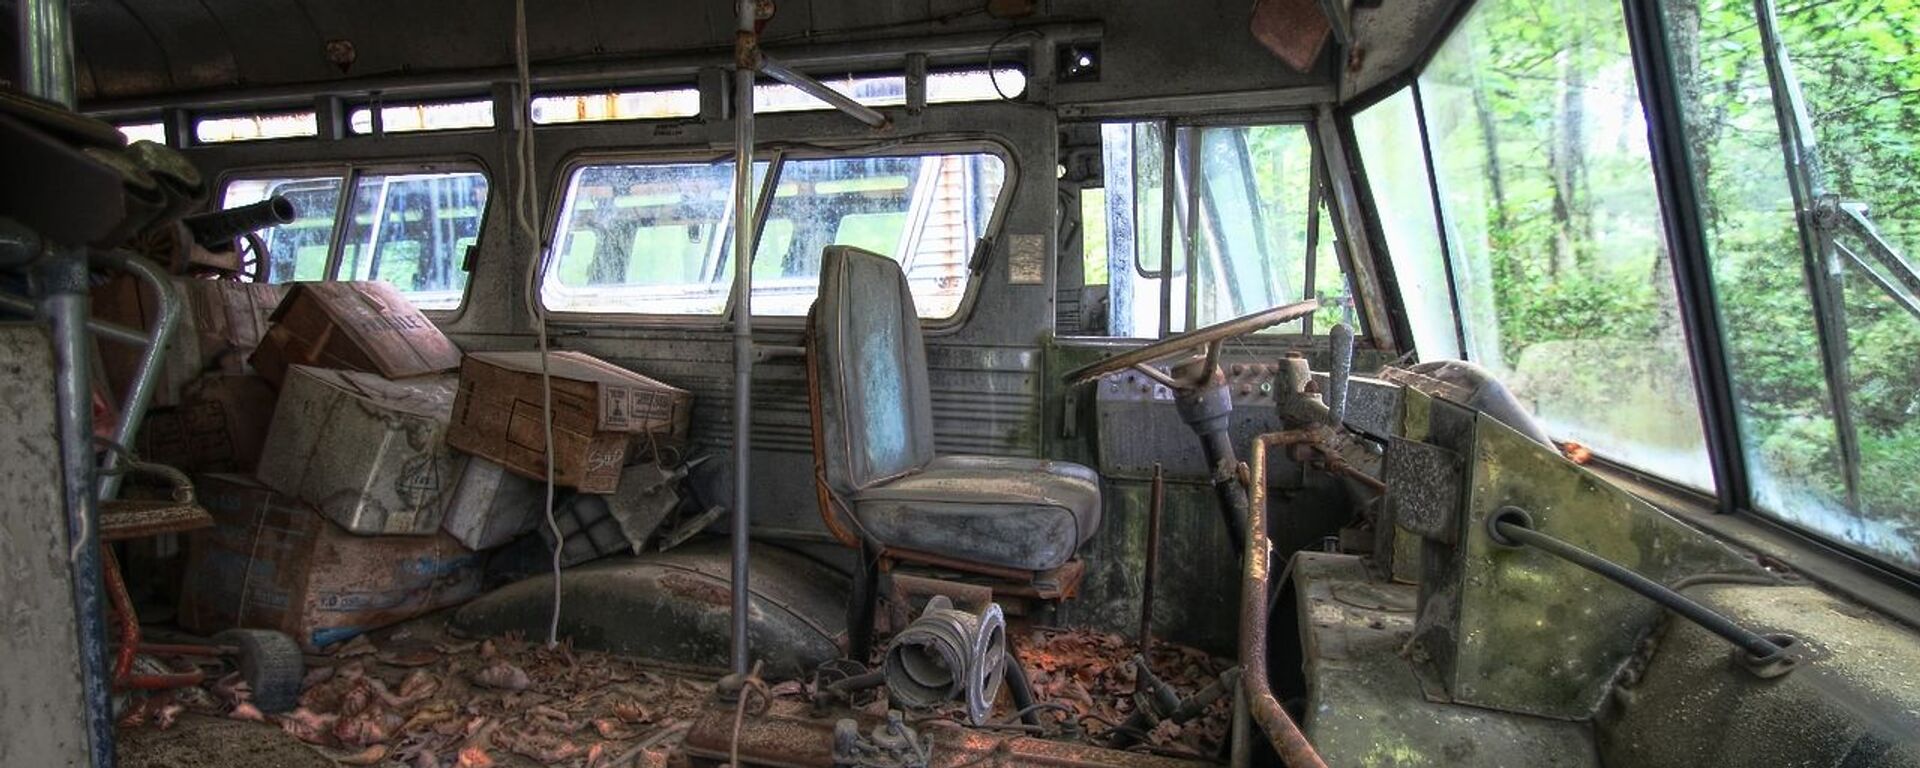 Un autobús abandonado, imagen referencial - Sputnik Mundo, 1920, 28.07.2019